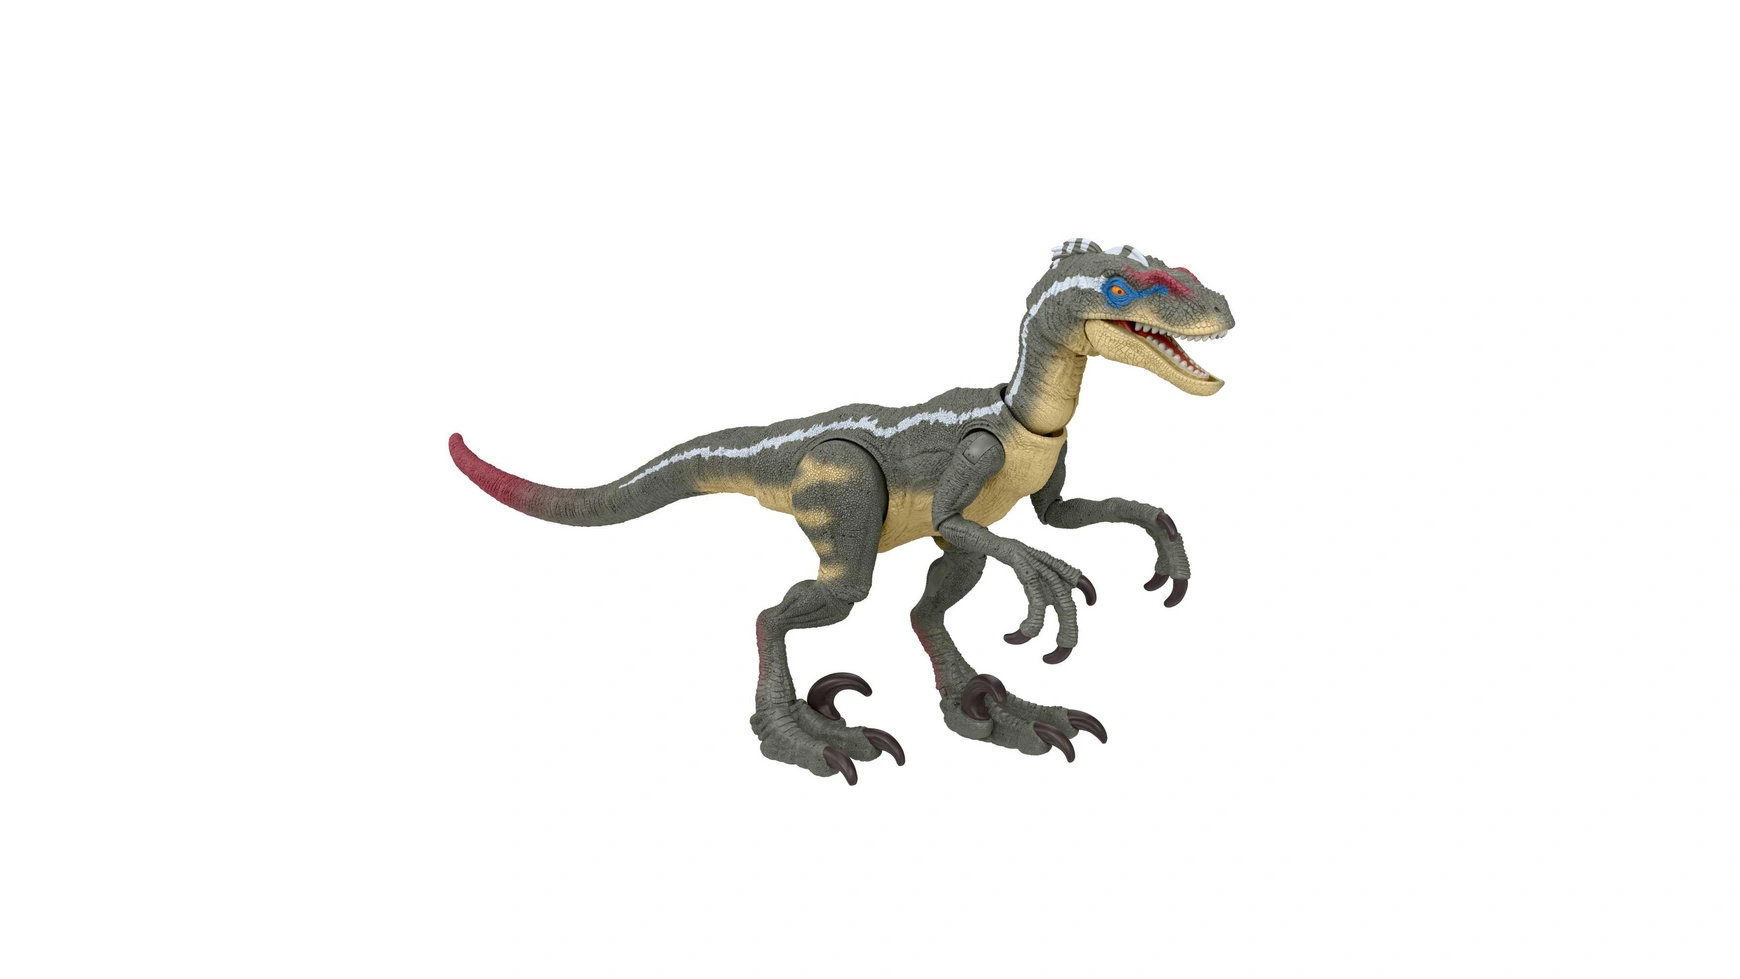 Велоцираптор из коллекции hammond world jurassic world (jp3) Mattel набор фигурок мир юрского периода giganotosaurus atrociraptor